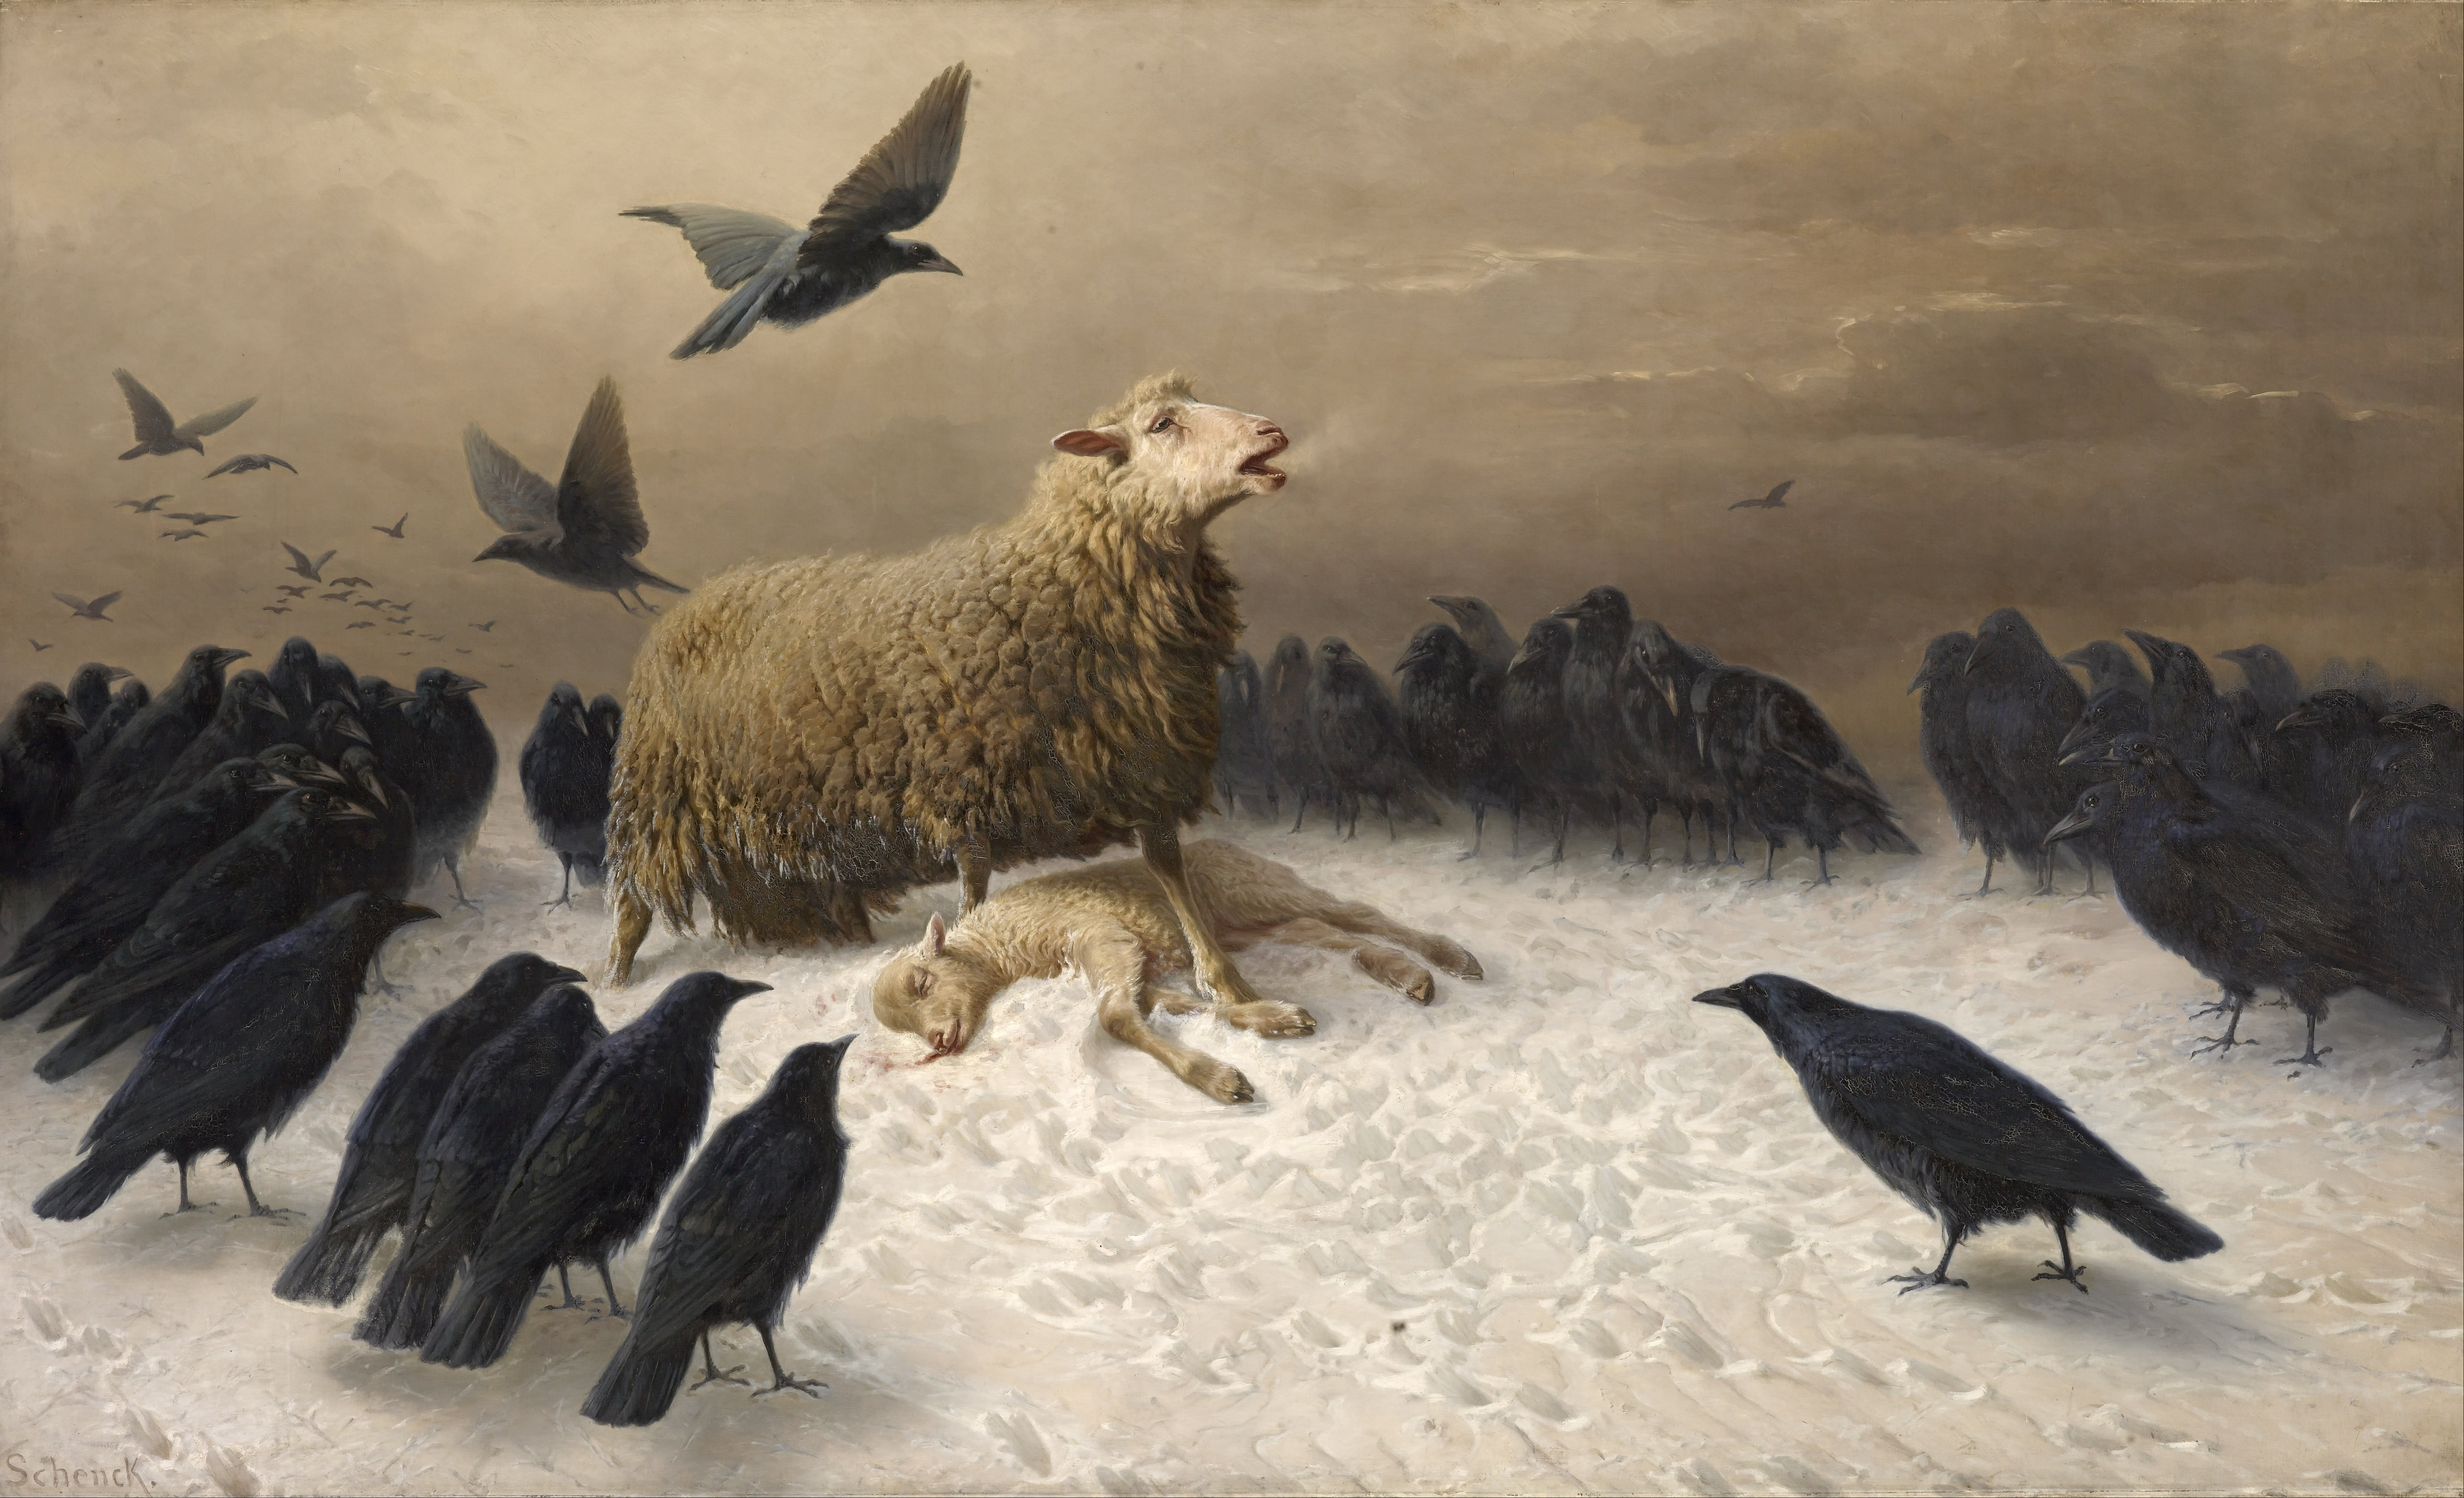 Albrecht Schenck, sheep, birds, classic art, crow, painting